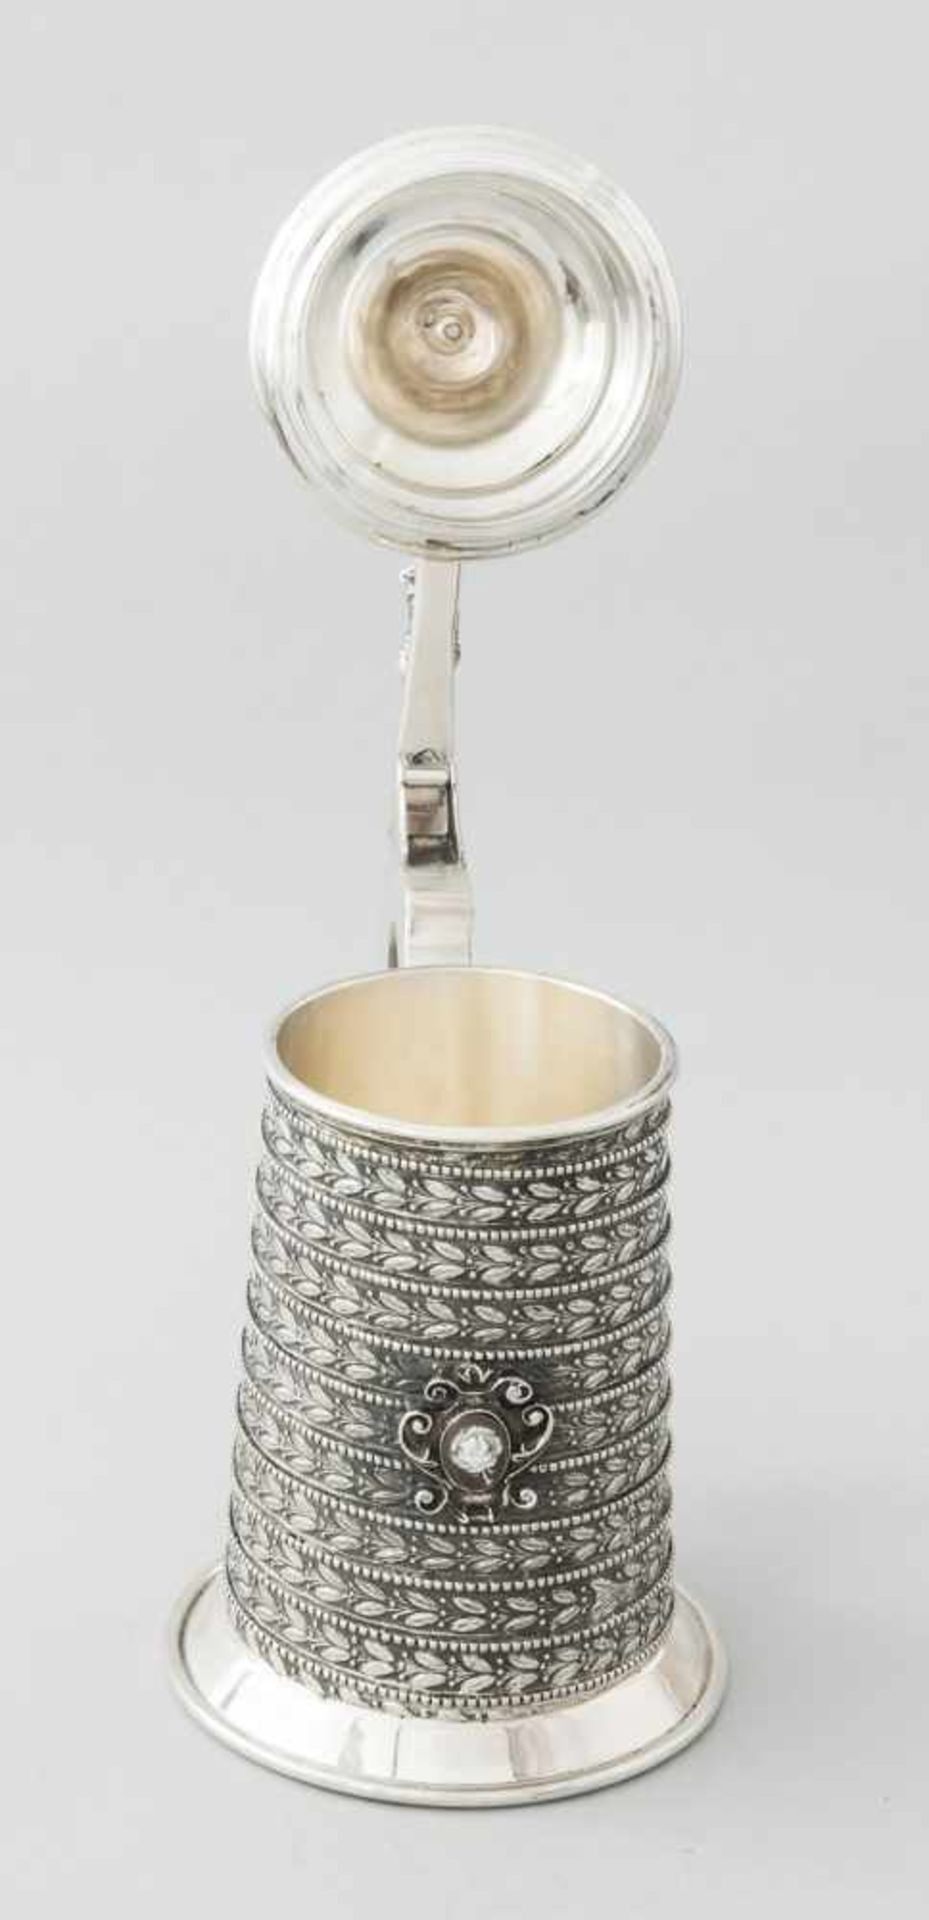 Silberhumpen mit BärGestempelt, Löwe und verschiedene weitere Stempel (unentschlüsselt), Silber - Bild 2 aus 4